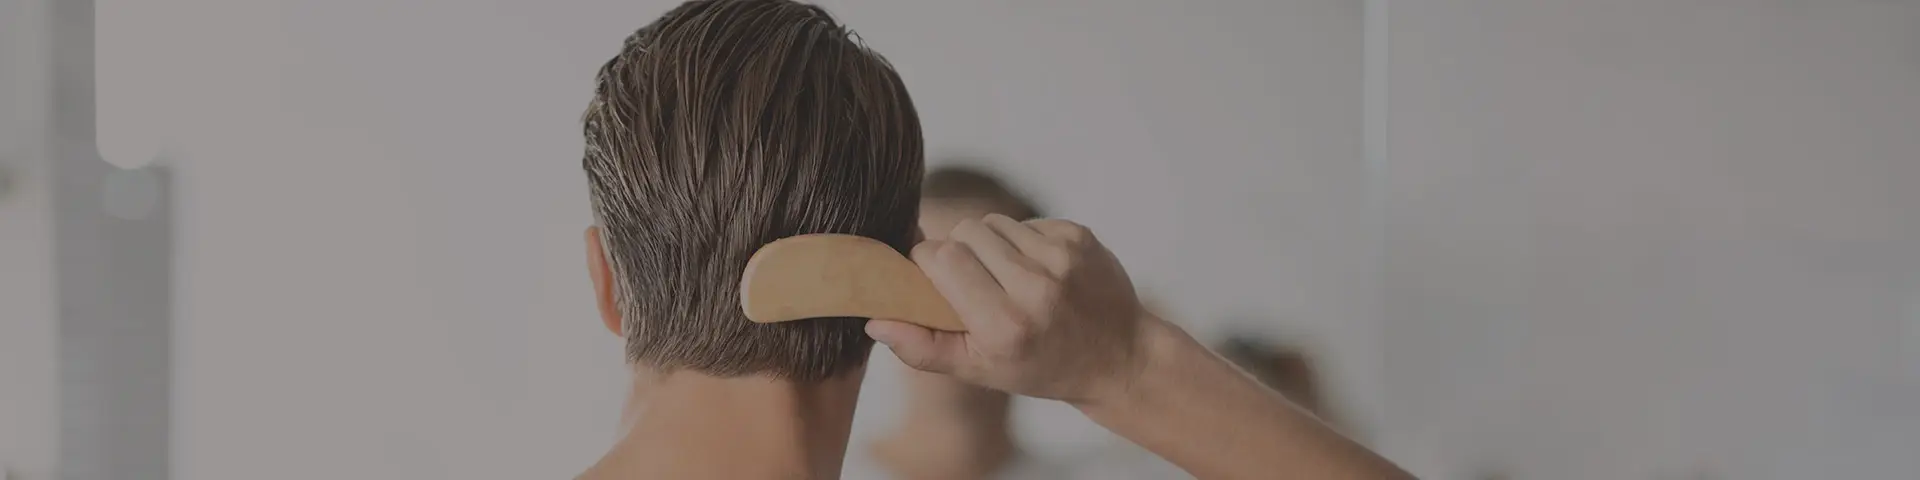 Erkekler Saç Bakımı Yaparken Nelere Dikkat Etmeliler?